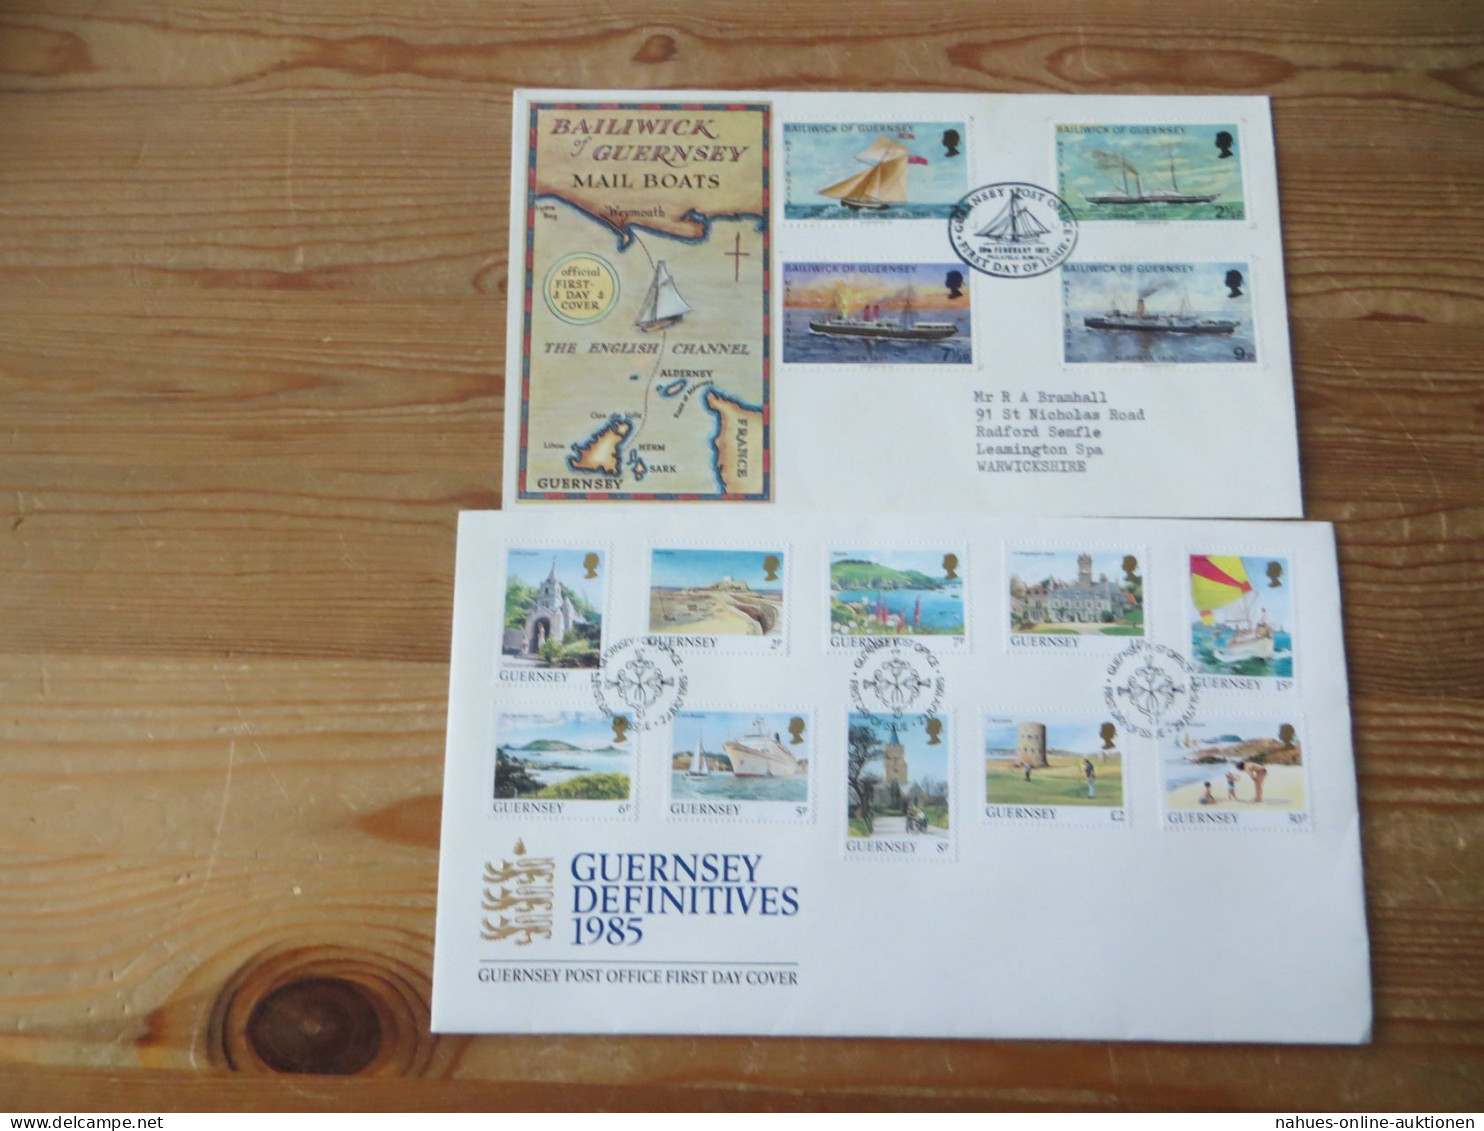 Großbritannien Guernsey Kanalinsel schöne Briefe Sammlung mit Festpreis 60,00